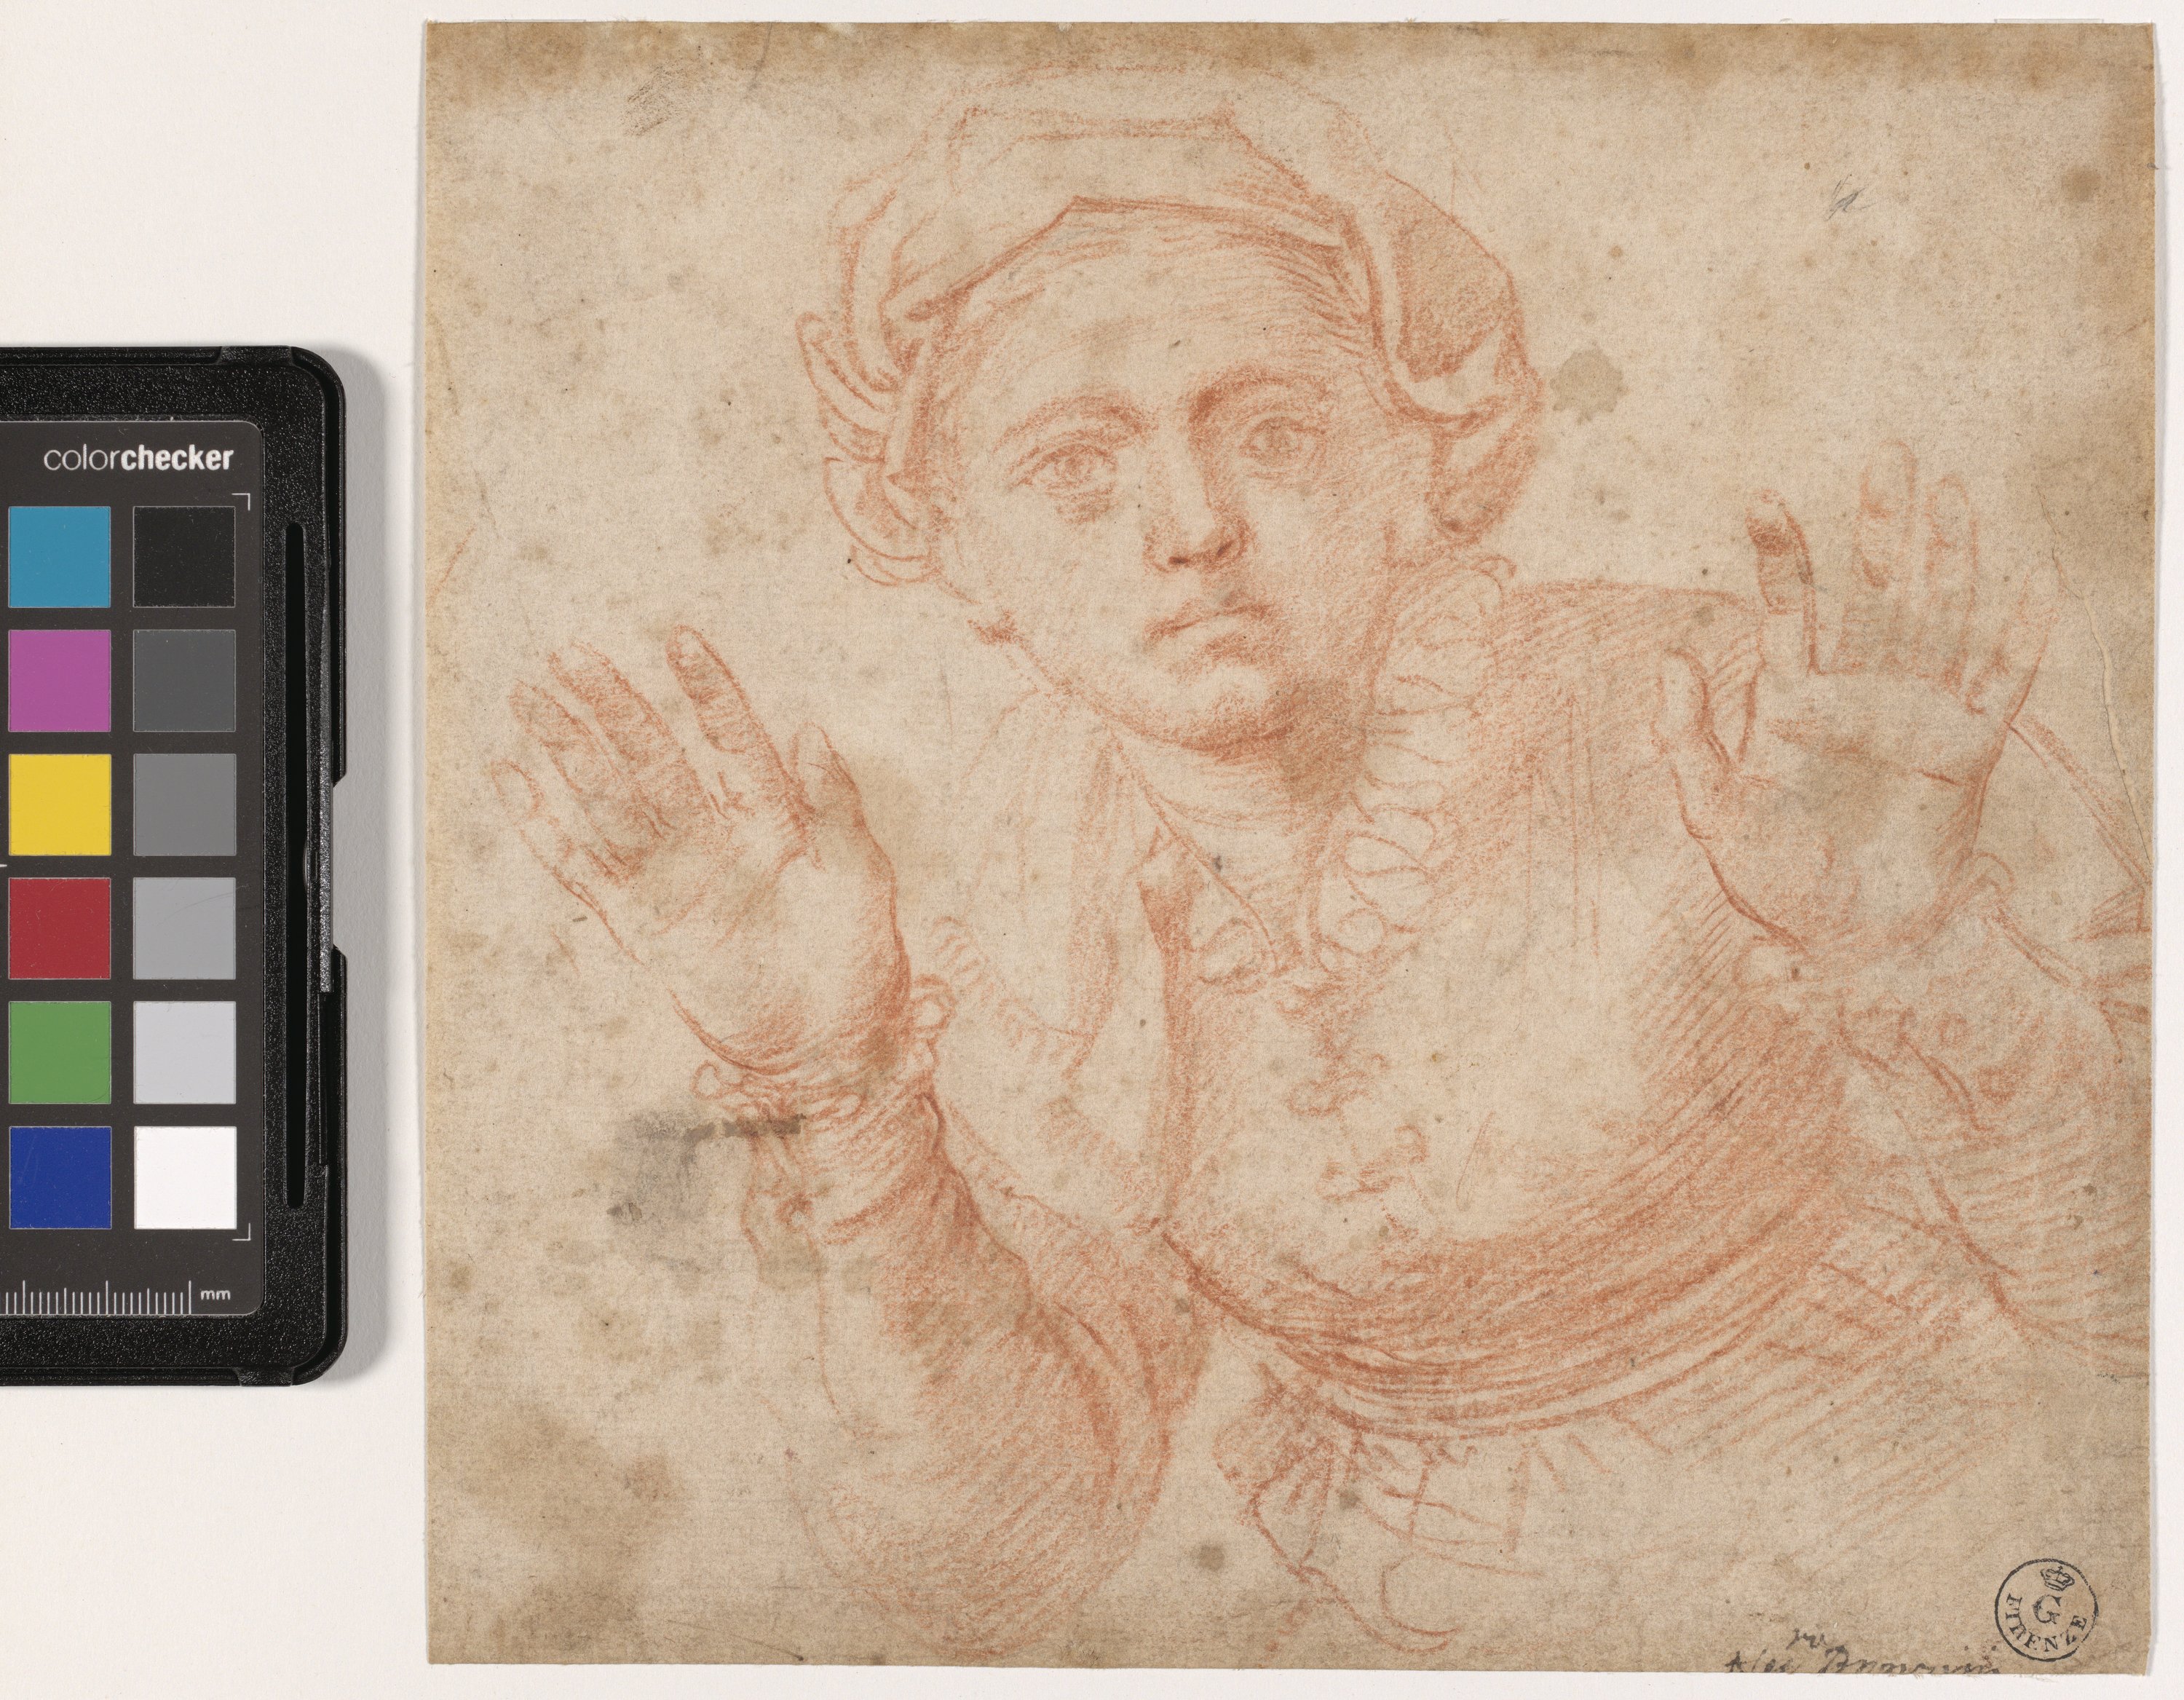 Studio di busto di giovane donna a braccia aperte (disegno) di Allori Alessandro (fine XVI)